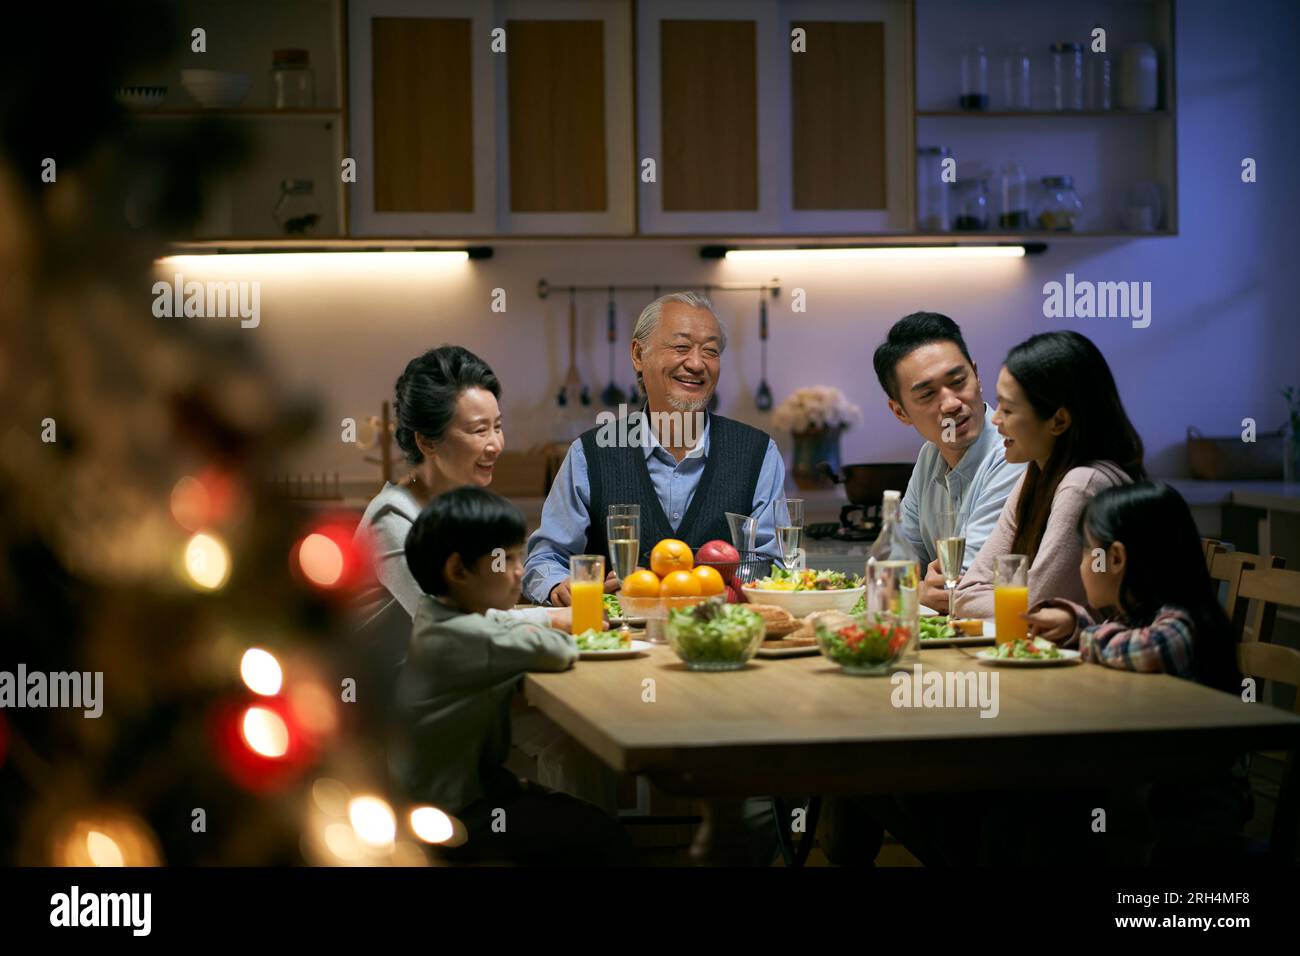 familia asiática de tres generaciones gatthering en casa teniendo la cena celebrando la navidad Foto de stock